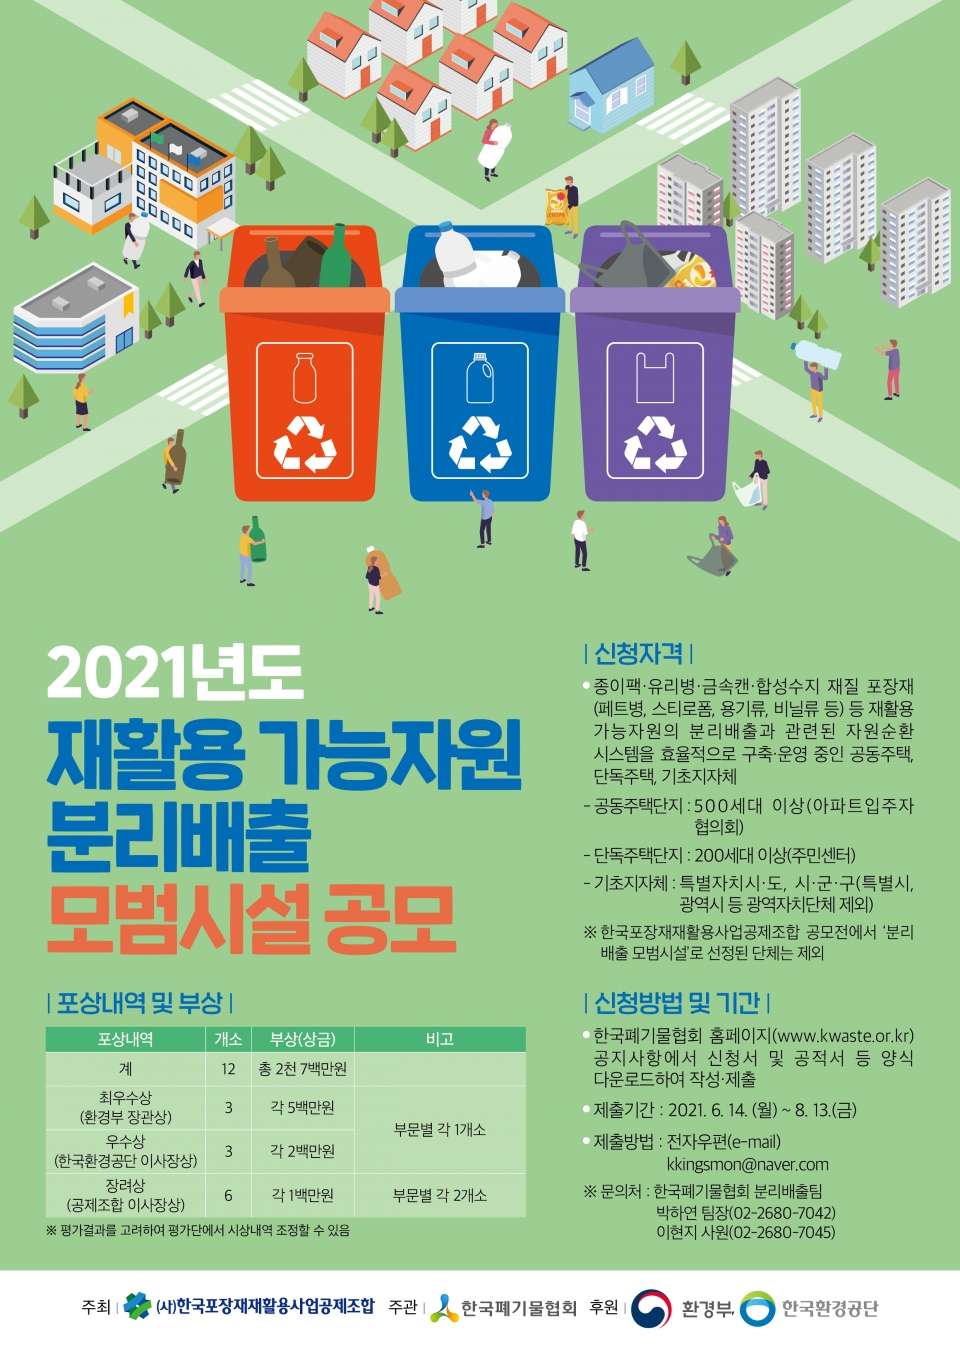 한국포장재재활용사업공제조합이 오는 8월 13일까지 2021년도 재활용 가능자원 분리배출 모범시설 공모전을 개최한다. (한국포장재재활용사업공제조합 제공)/그린포스트코리아